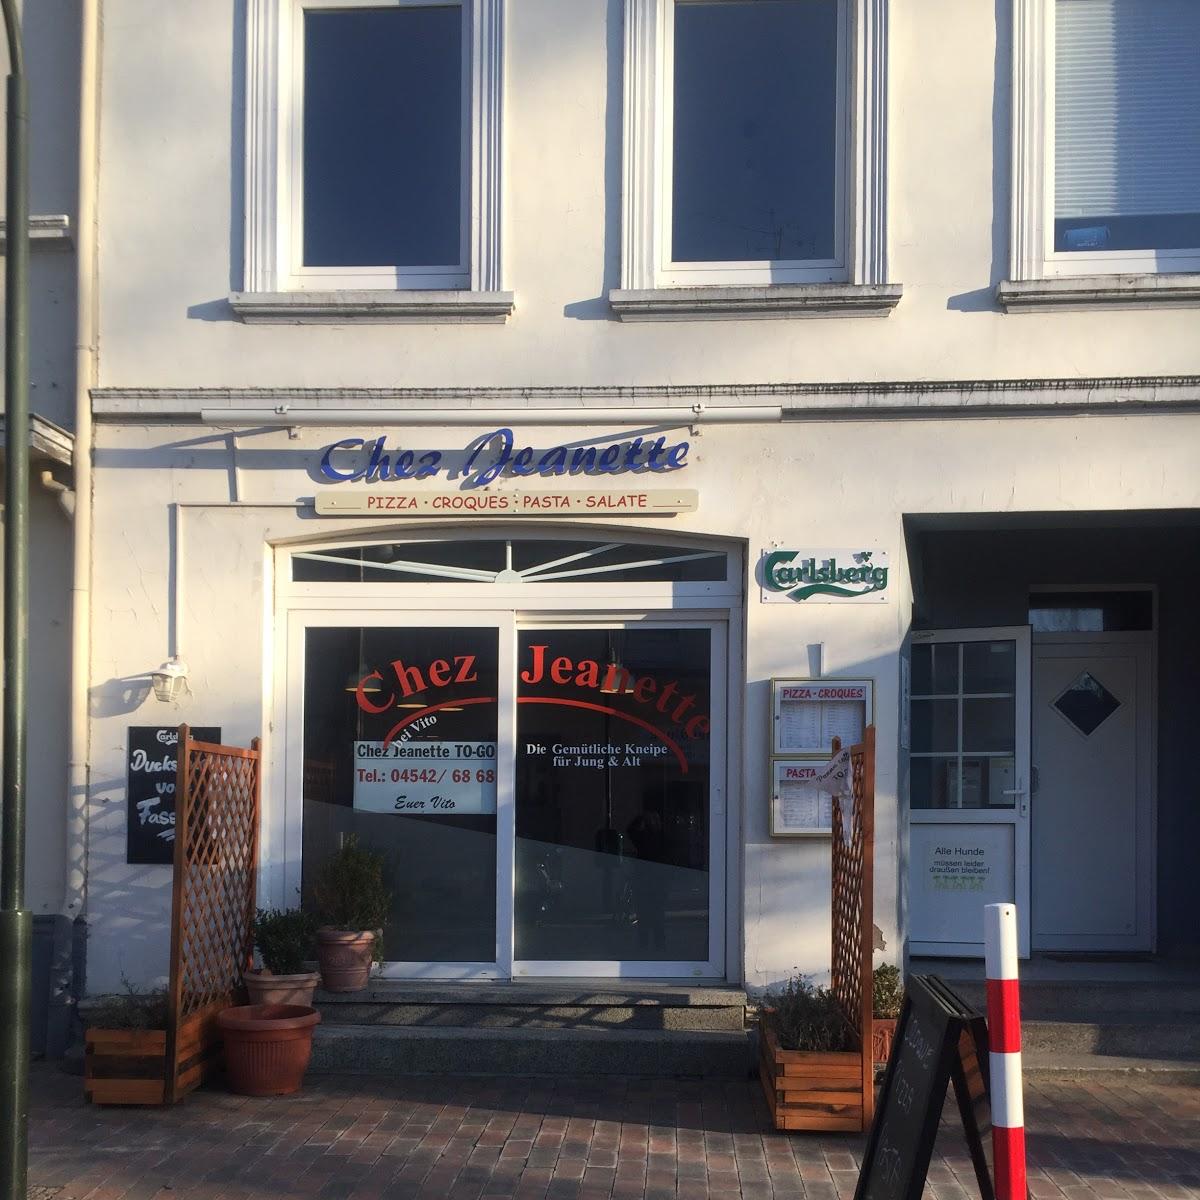 Restaurant "Chez Jeanette" in Mölln